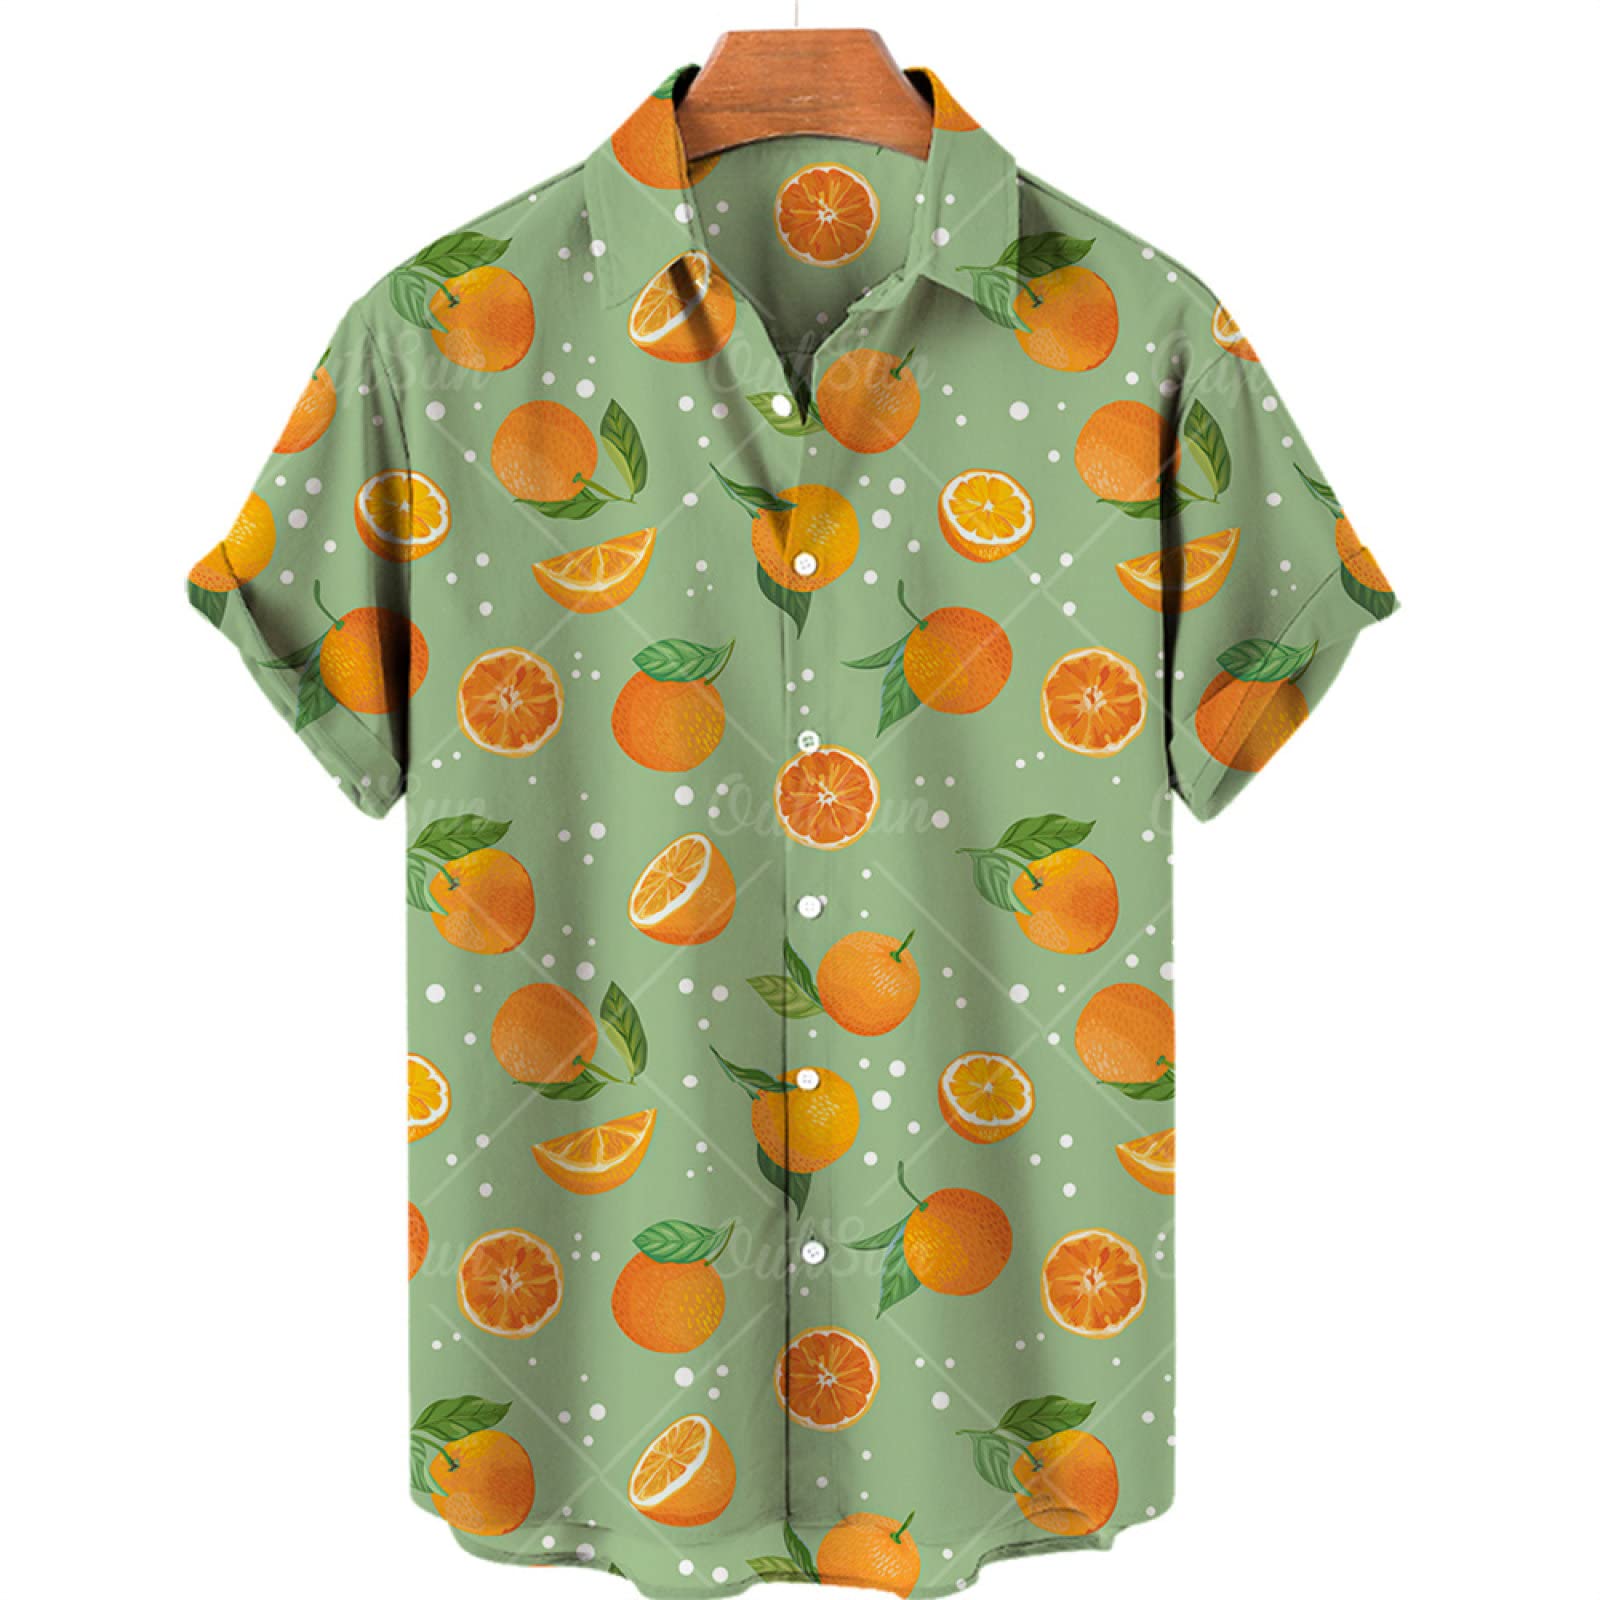 SHOUJIQQ Herren-Hawaii Hemd Aloha Hemden-Frucht Zitronen Muster Bedruckt Kurzarm-Shirt Sommer-Strand-Lässige Bluse Mit Knöpfen Für Unisex-Party-Kleidung, A, Groß